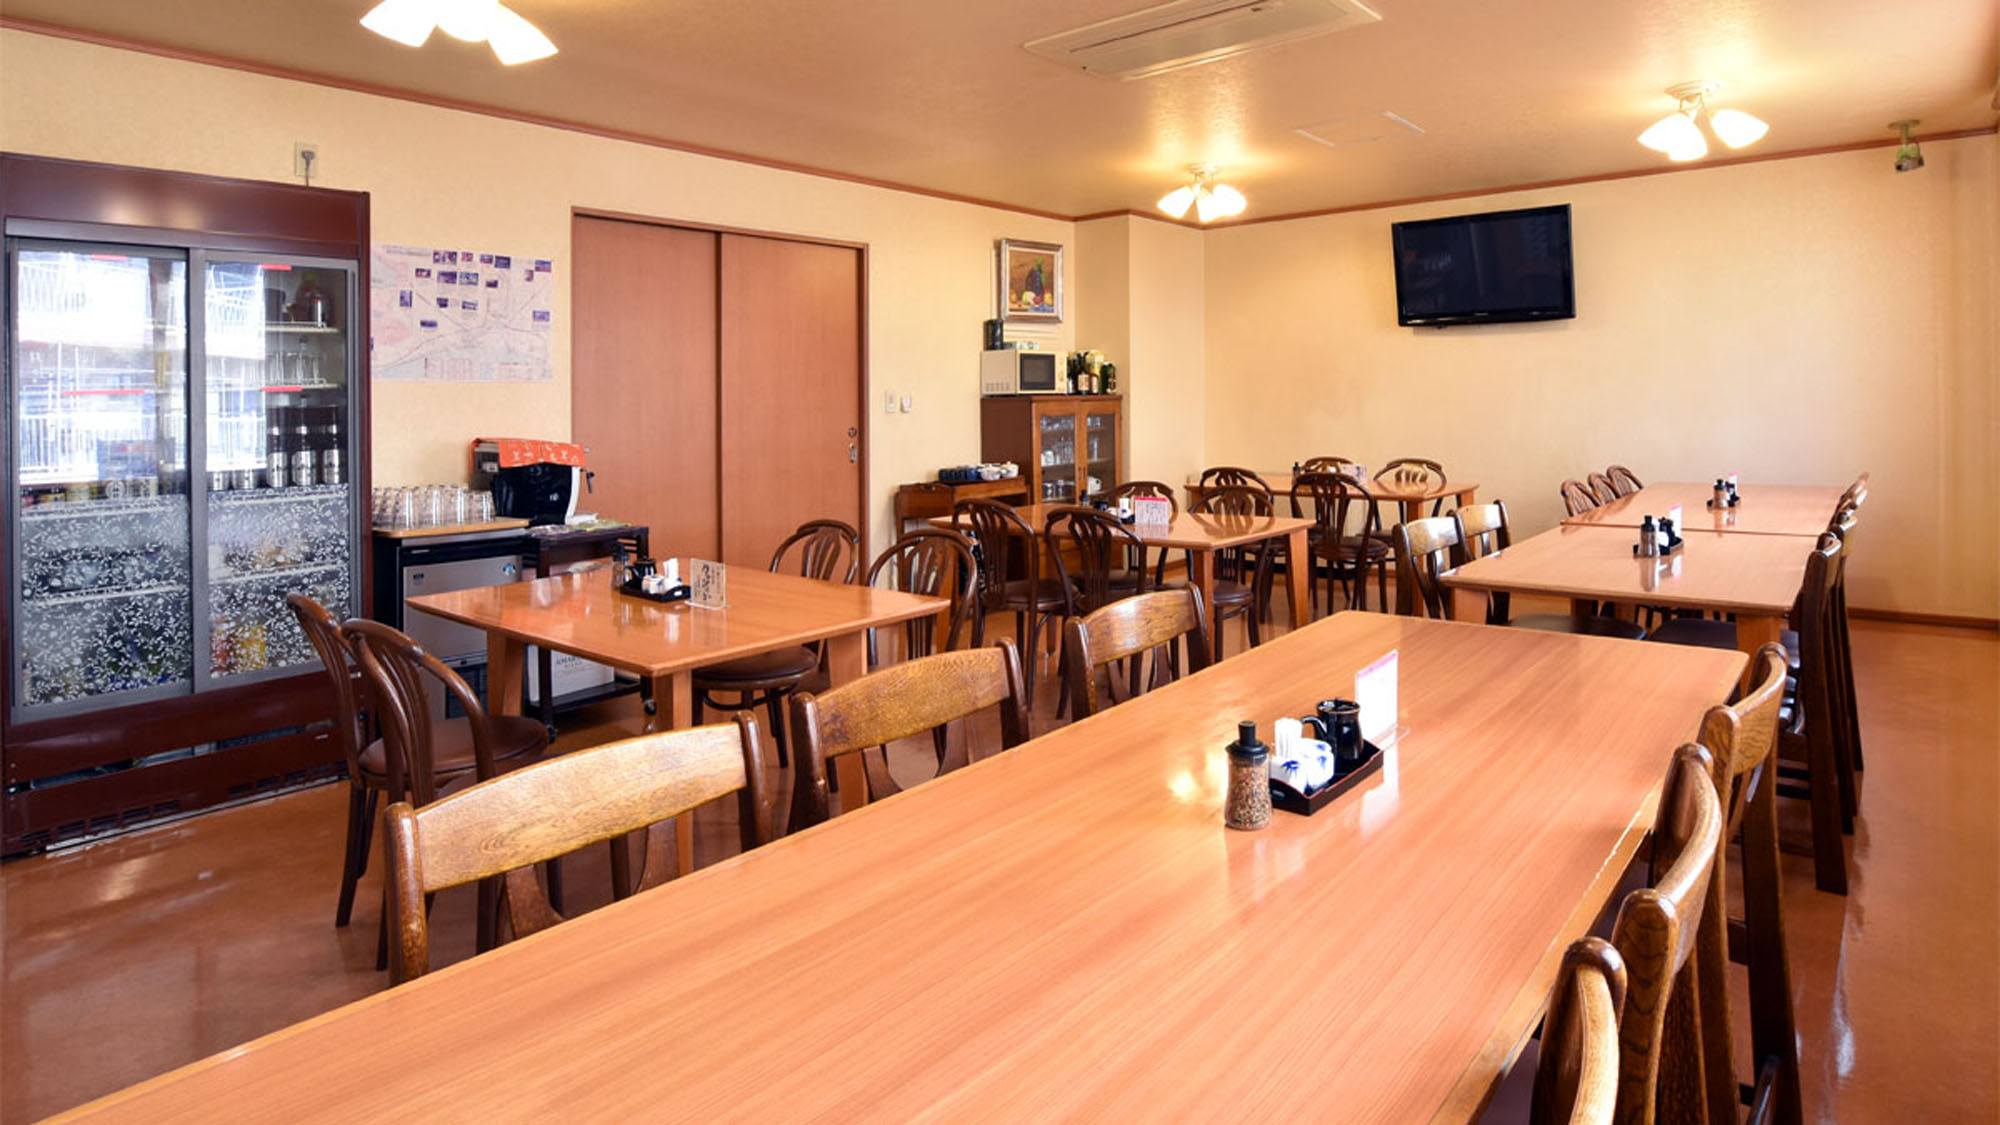 【食堂】当施設は道産食材にこだわる「北の恵み愛食レストラン」に認定された施設です。